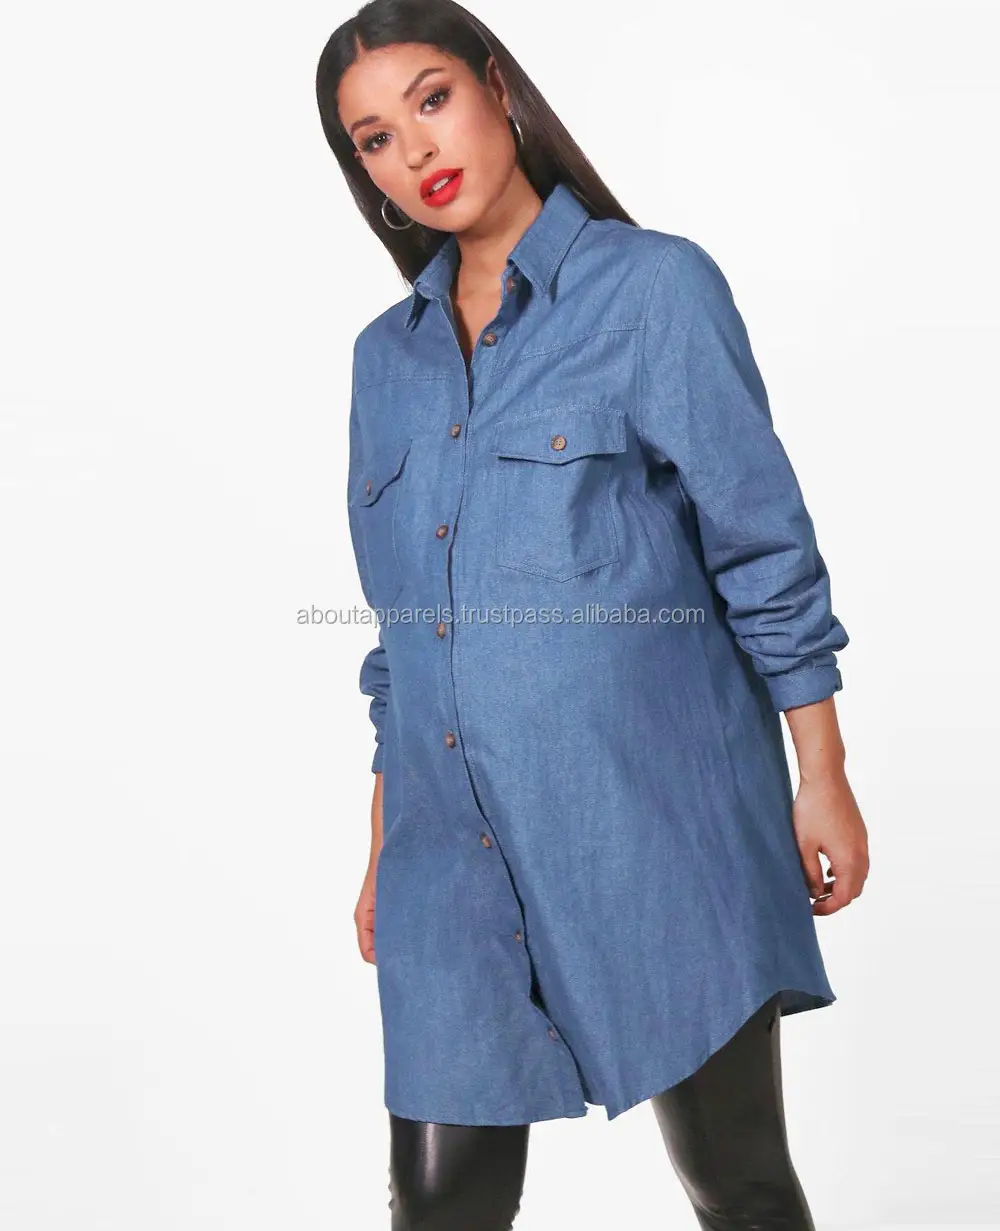 Chemise en jean à manches longues à la mode orientée vers l'exportation, NOUVELLE chemise en jean respirante pour femmes bon marché 2018